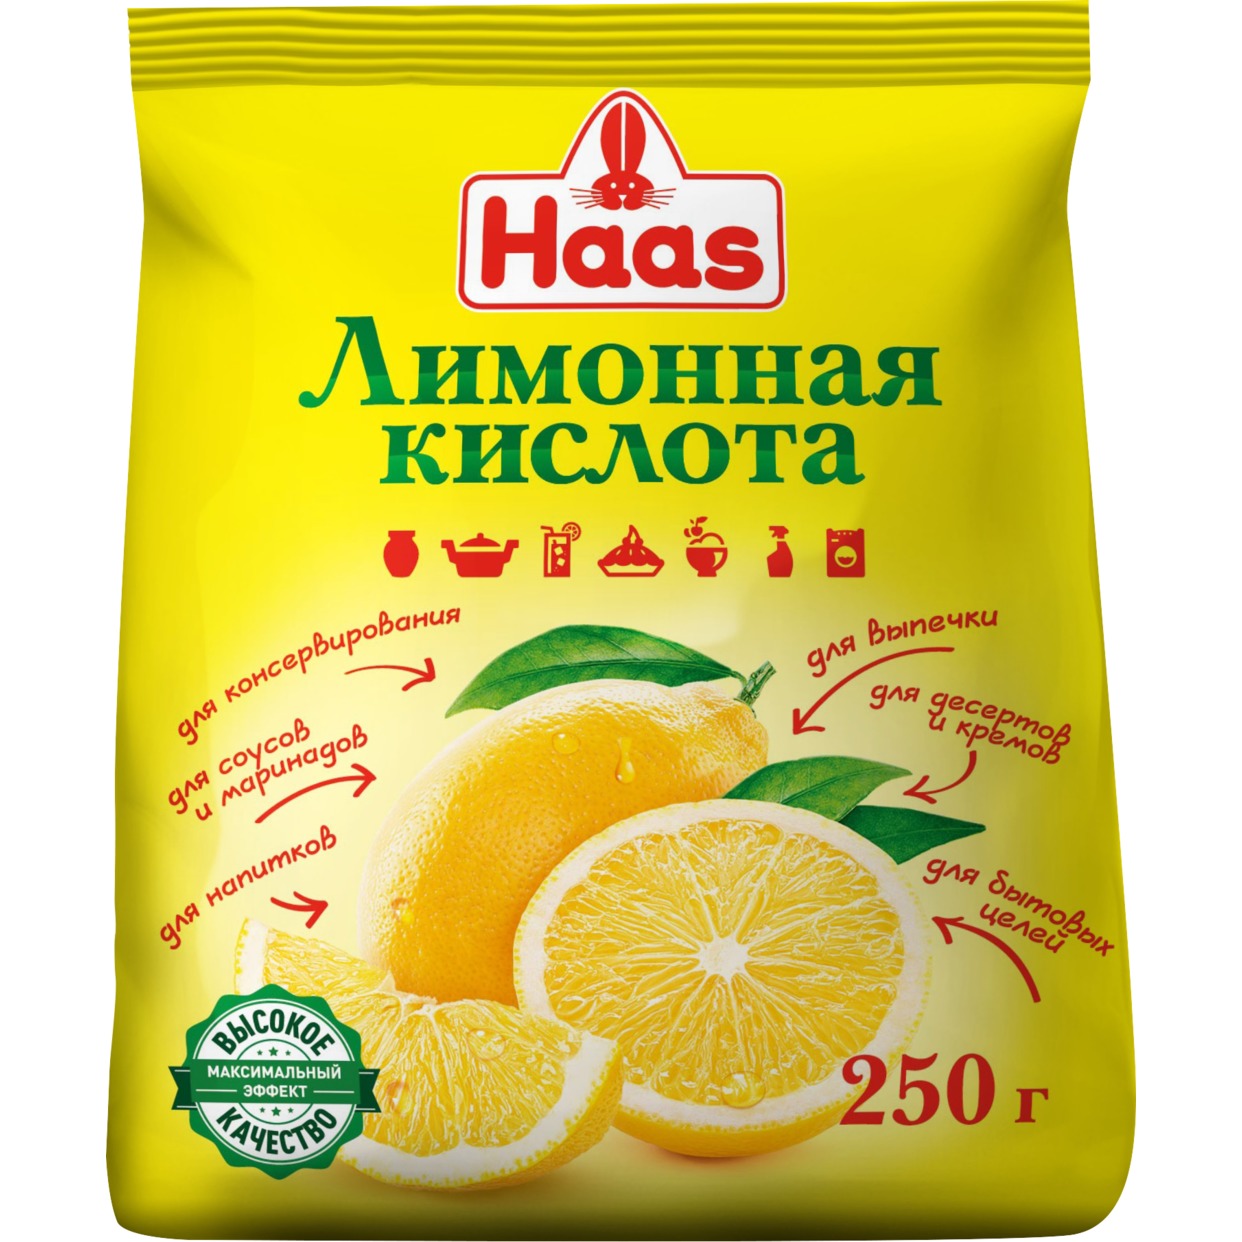 HAAS Лимонная кислота 250г по акции в Пятерочке